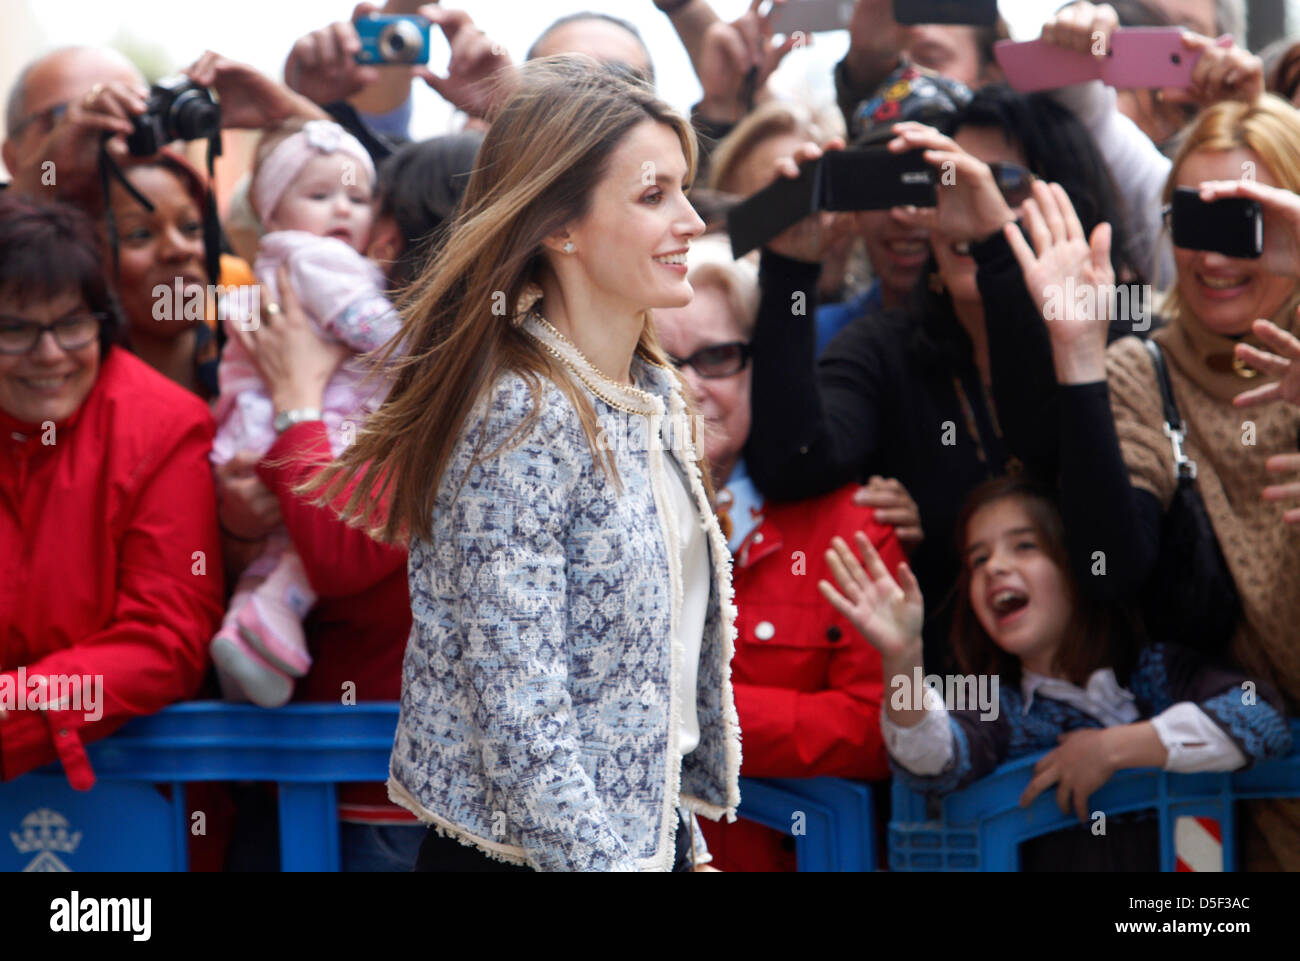 Mallorca, Espagne. 31 mars, 2013. La princesse d'Espagne Letizia promenades près de la foule après avoir assisté à une messe de Pâques à Palma de Majorque, sur l'île de Majorque. Credit : zixia/Alamy Live News Banque D'Images